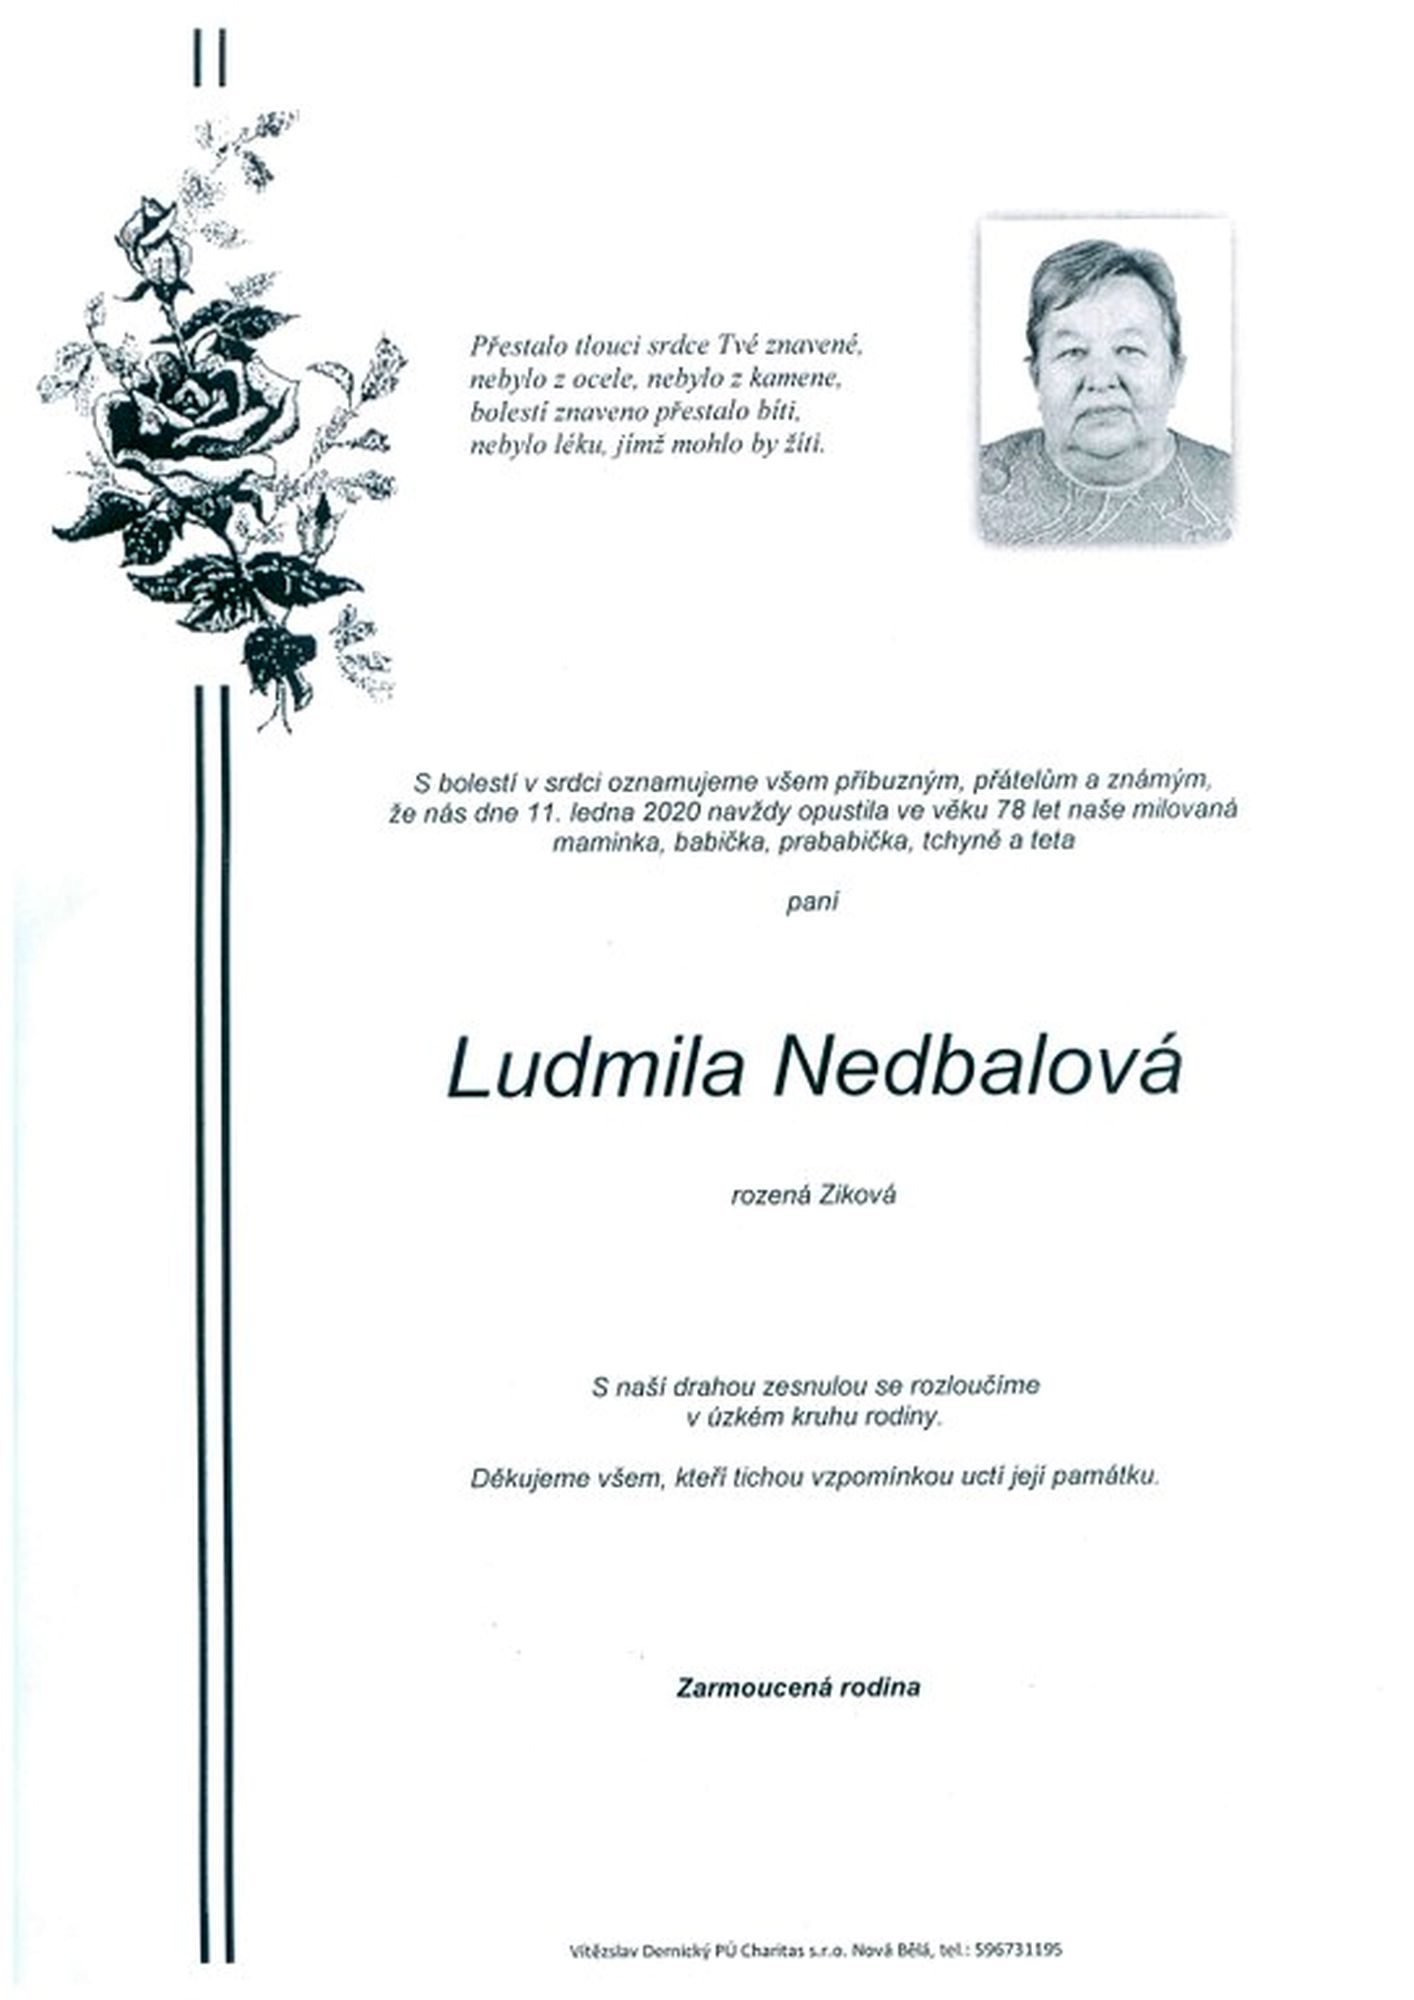 Ludmila Nedbalová